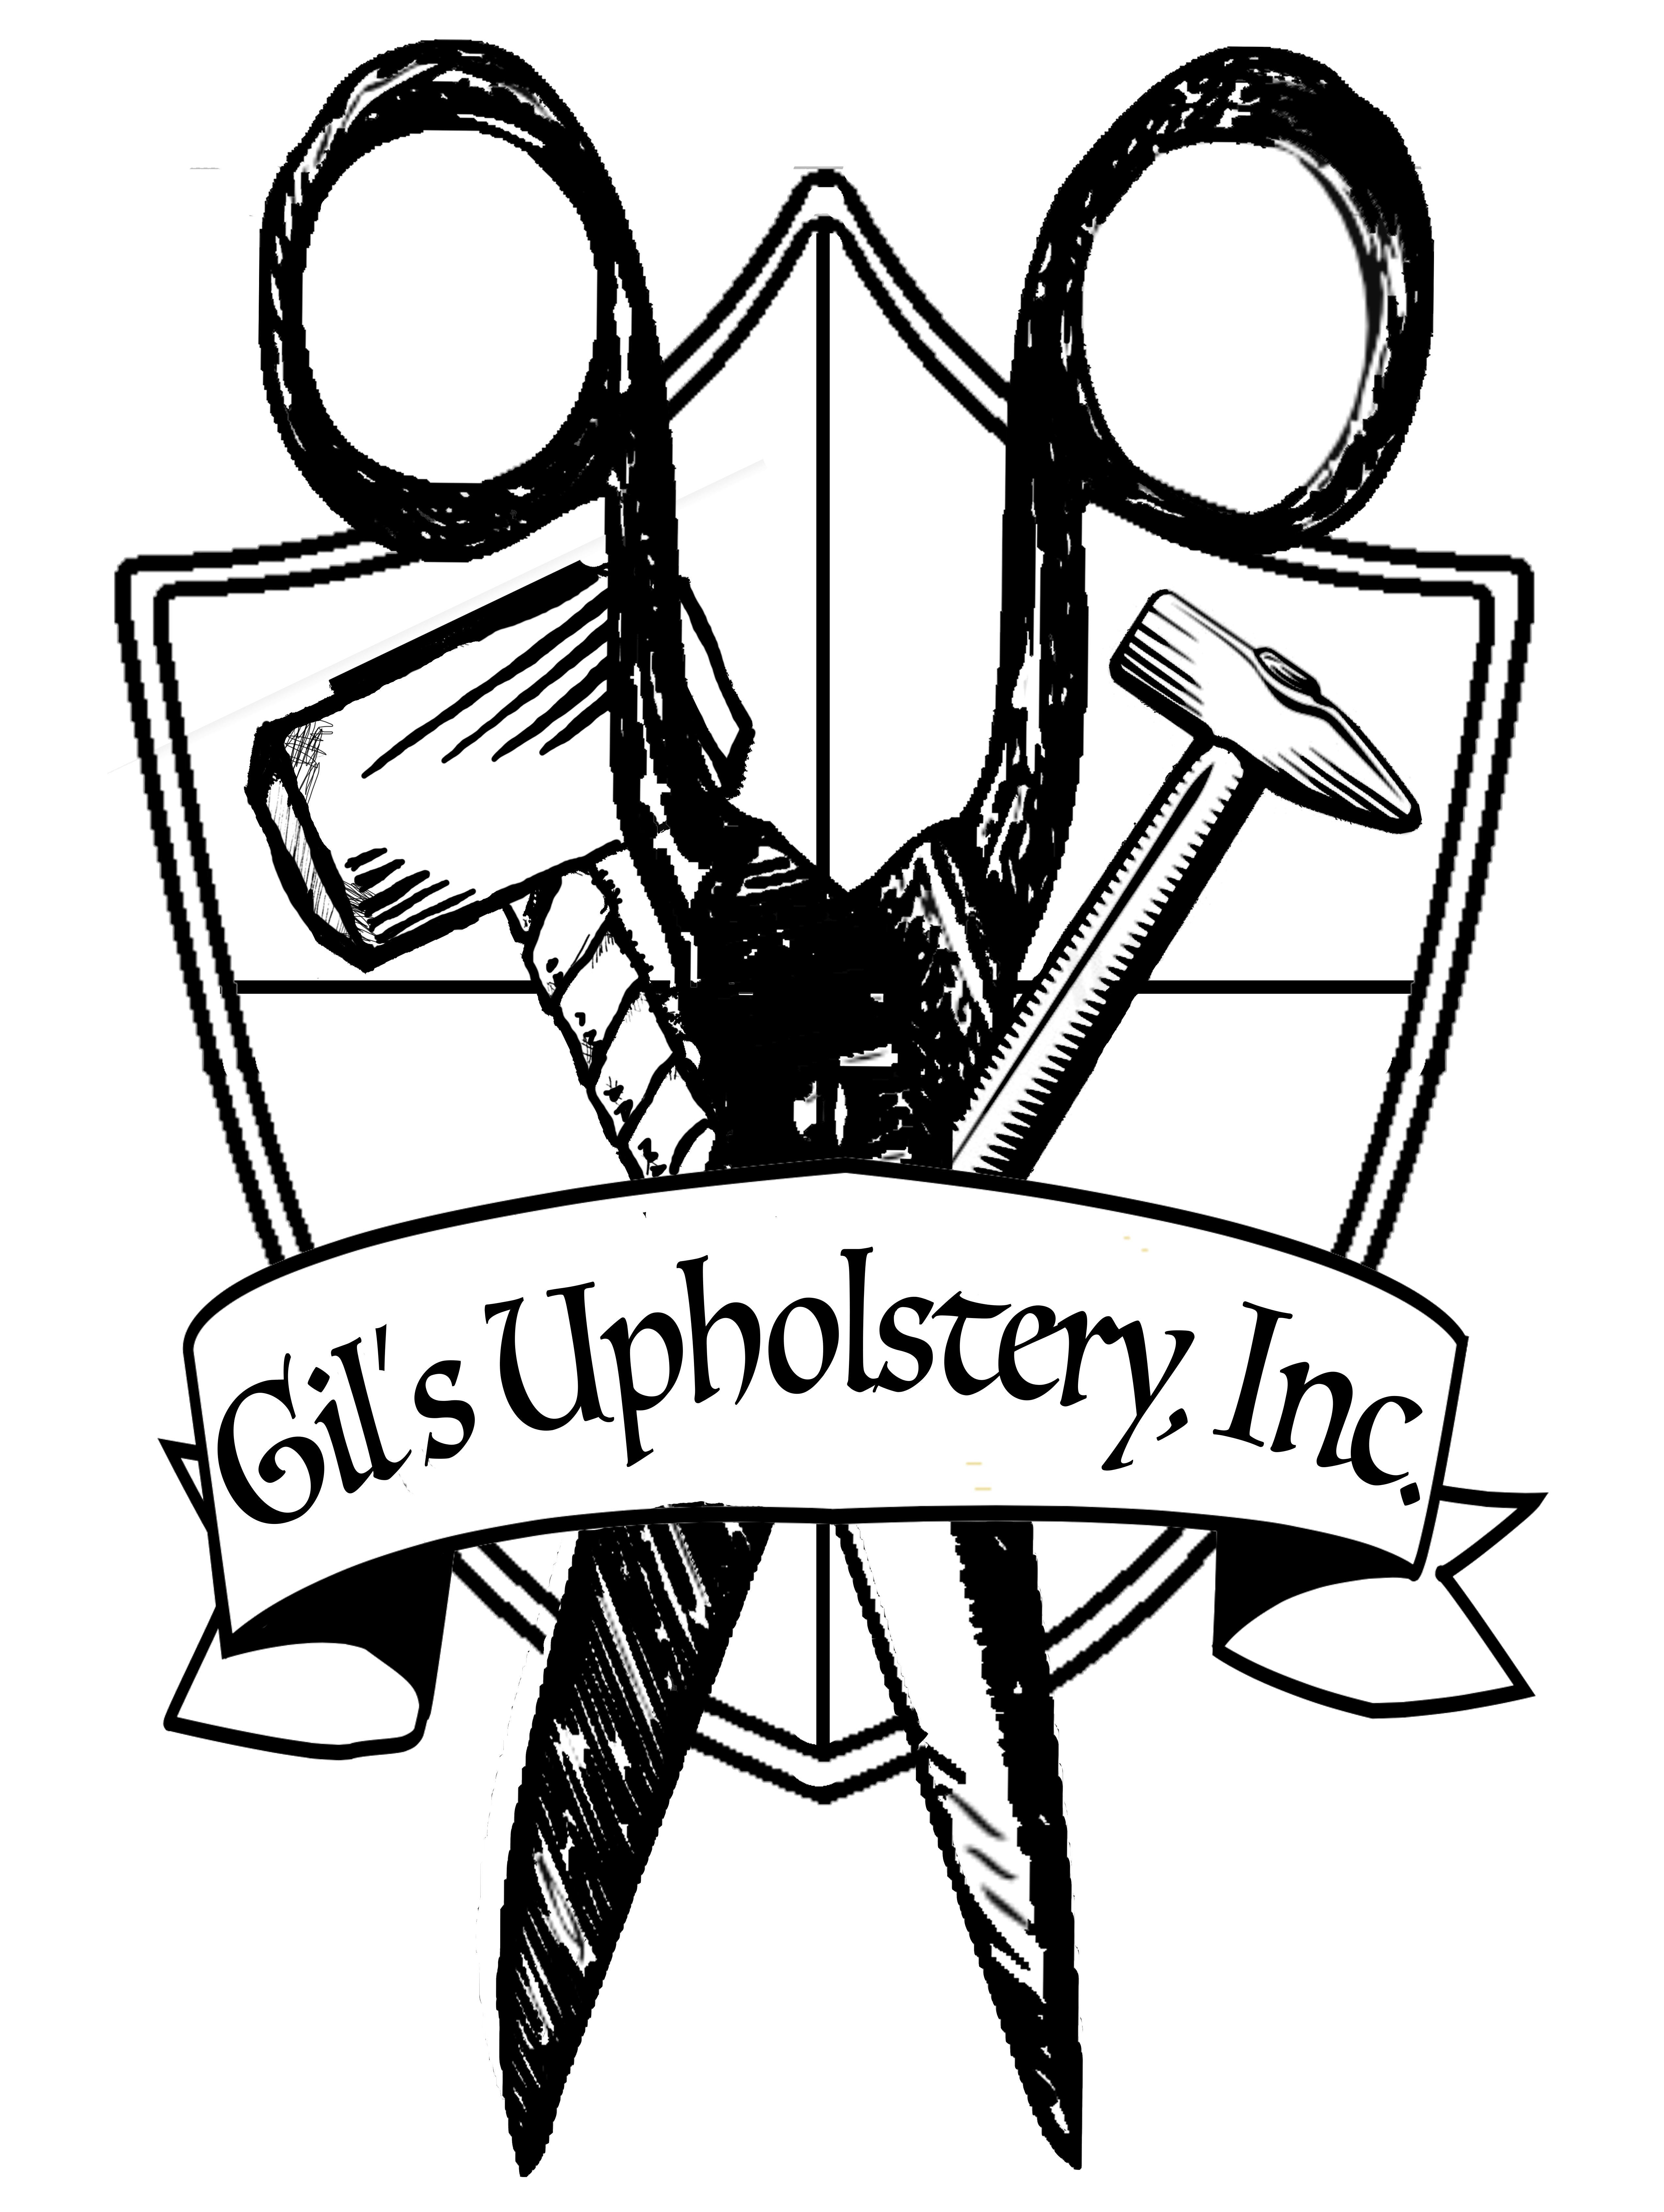 Upholstery Logo - Home's Upholstery, Inc